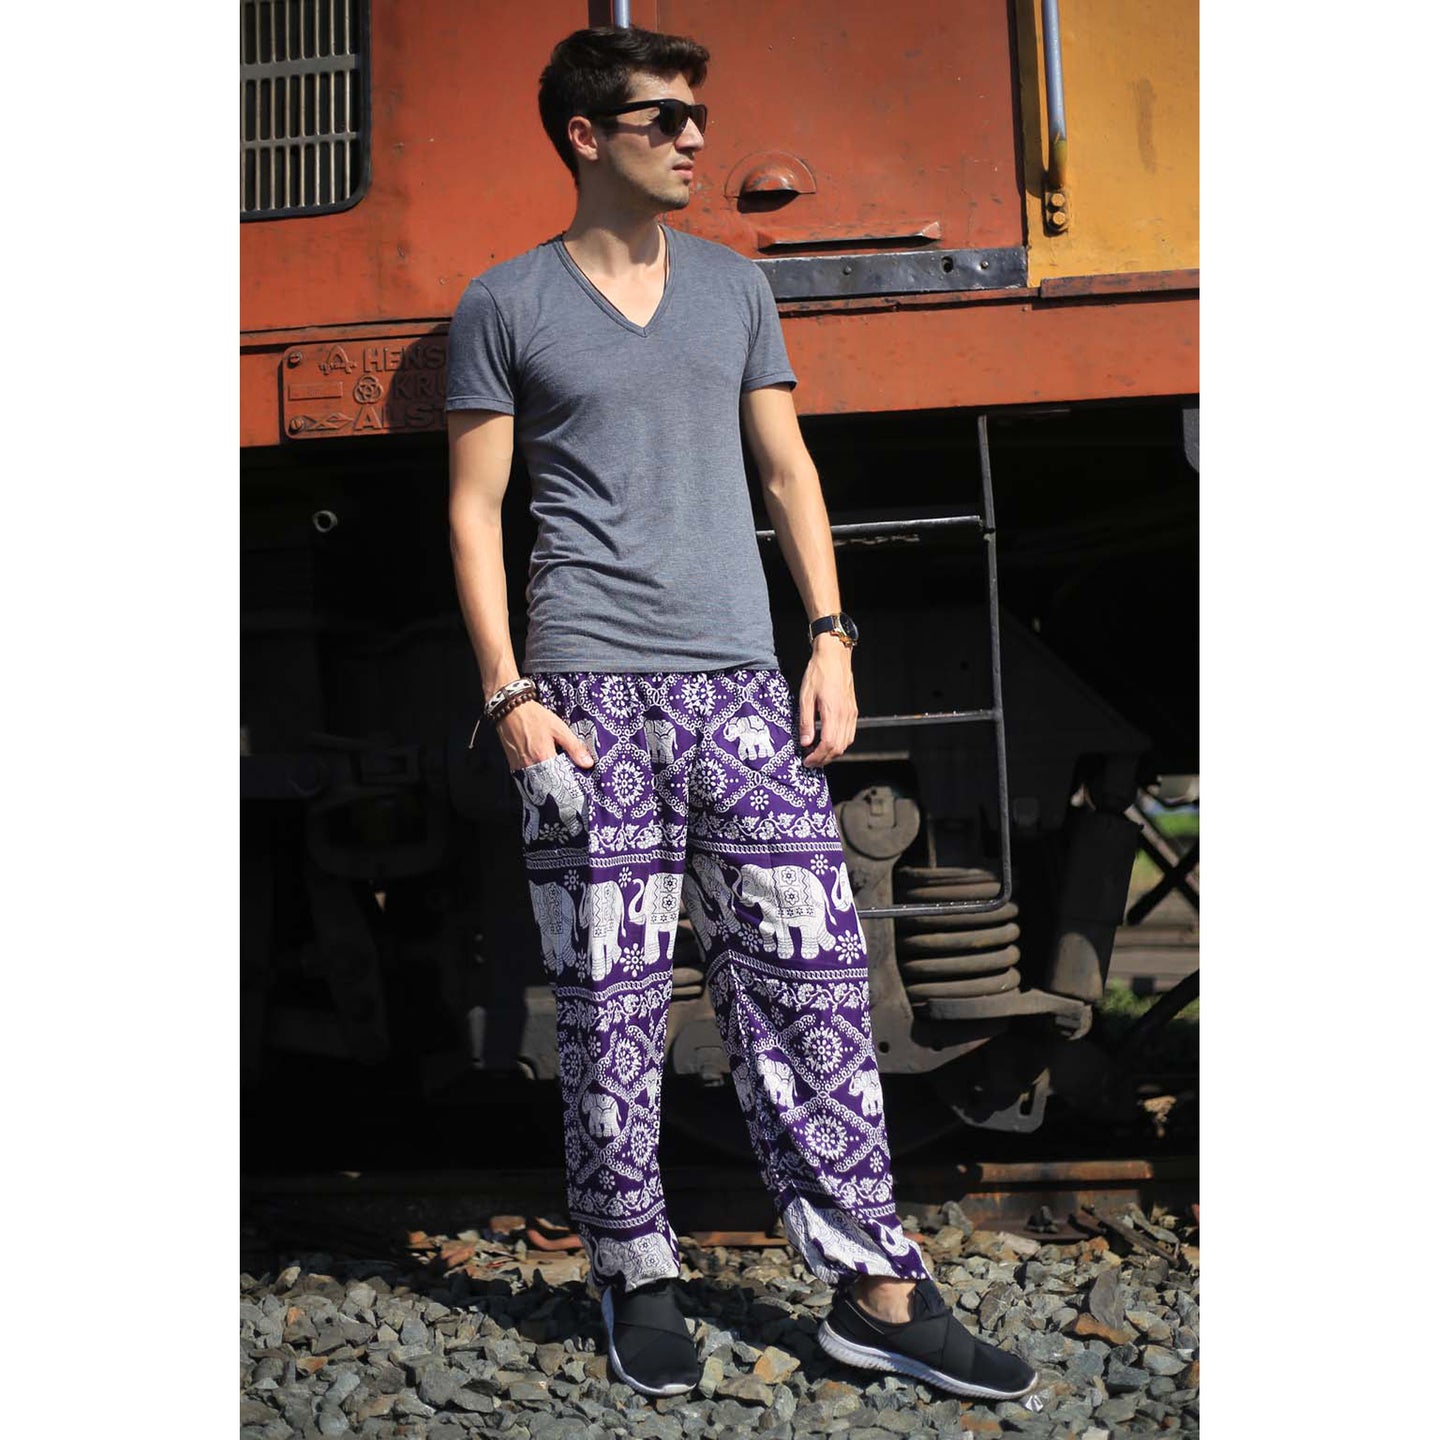 Imperial Elephant 5 men/women harem pants in Purple PP0004 020005 03